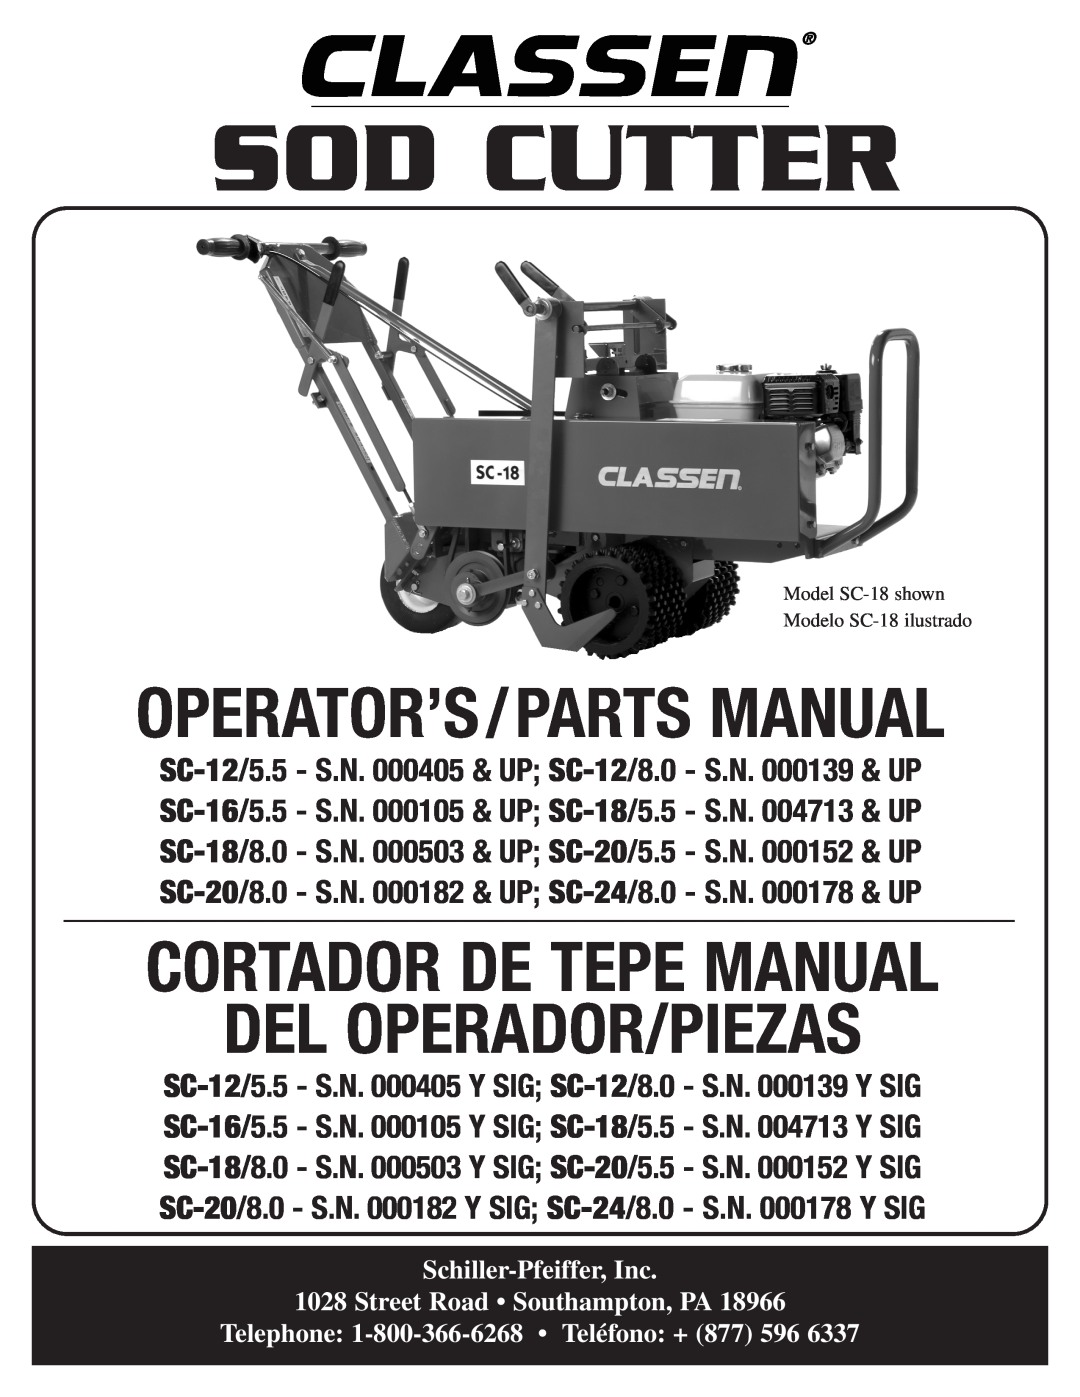 Classen SC-12/5.5, SC-20/5.5 manual Sod Cutter, Del Operador/Piezas, Operator’S/Parts Manual, Cortador De Tepe Manual 